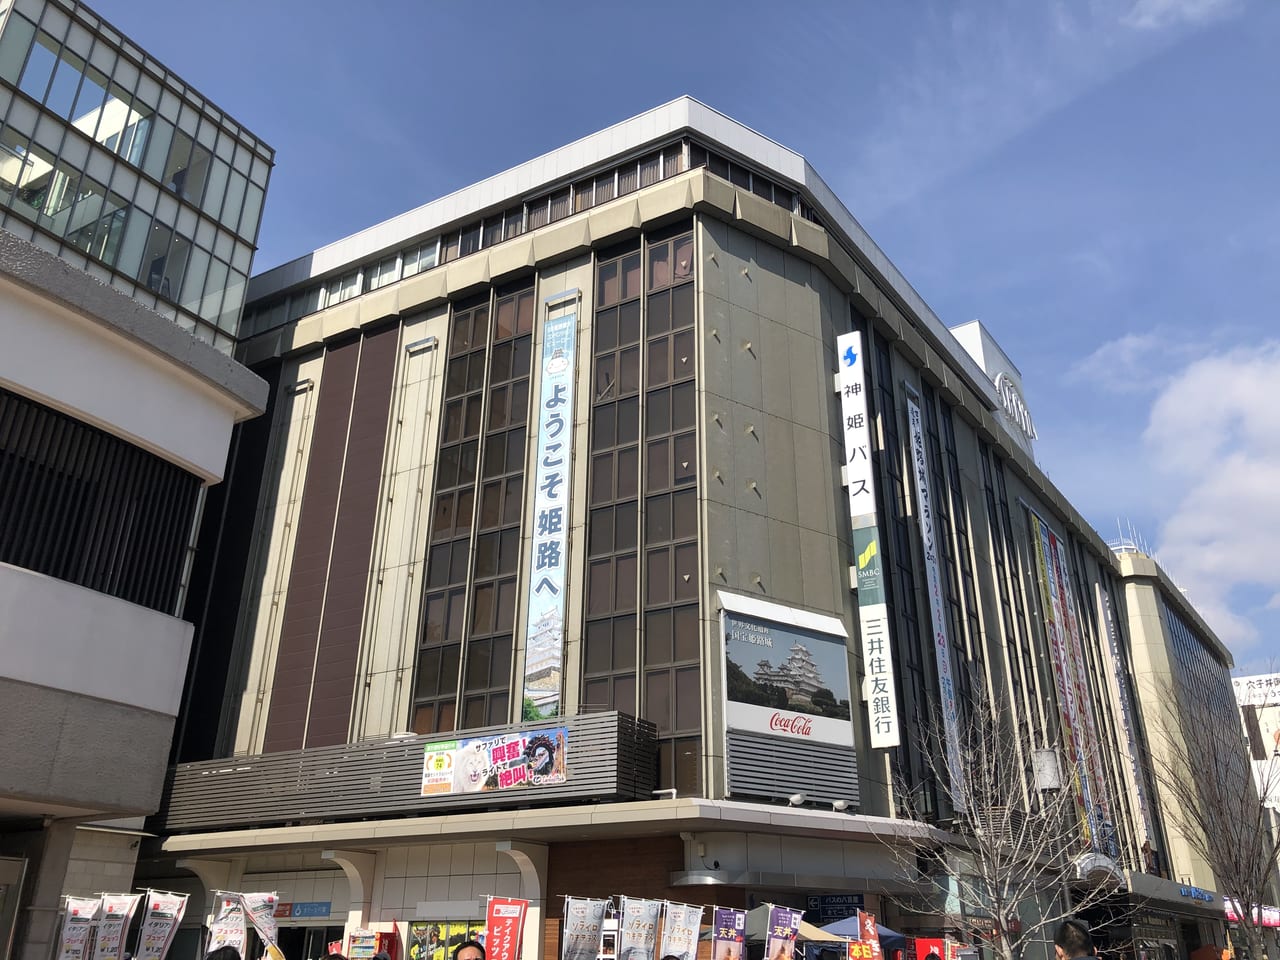 姫路市 21年4月28日 水 に 青山フラワーマーケット姫路山陽店 が山陽百貨店内にオープンしたそうです 号外net 姫路市